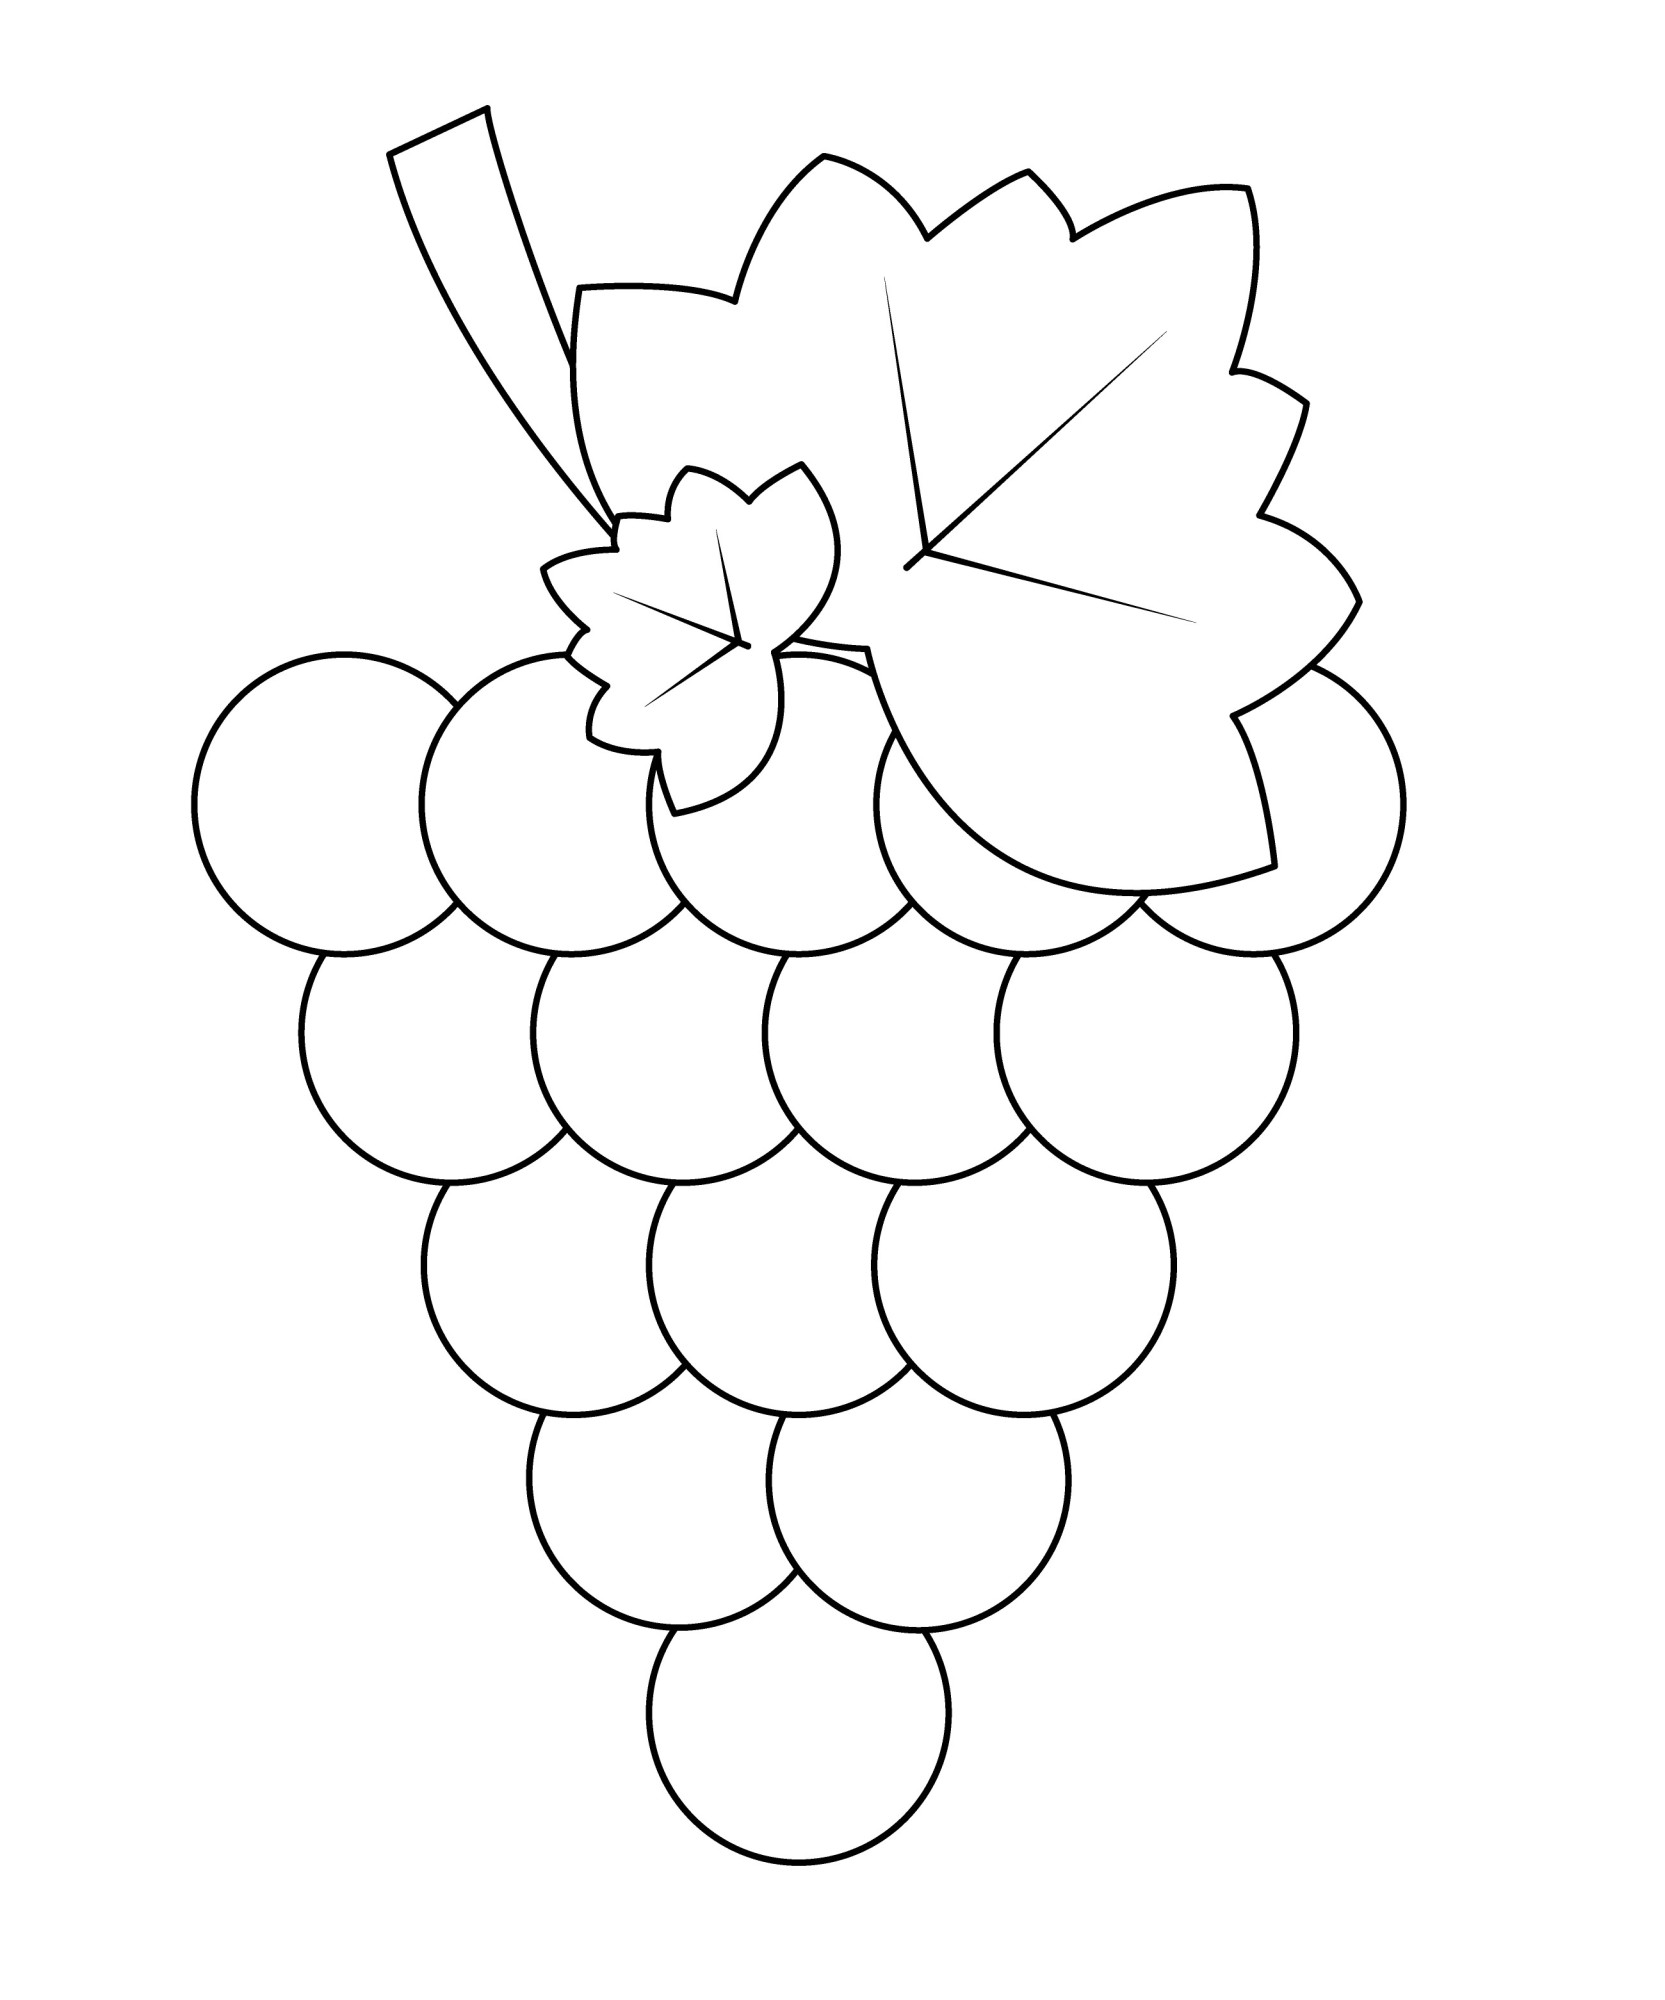 Раскраска для детей: лист винограда на грозди